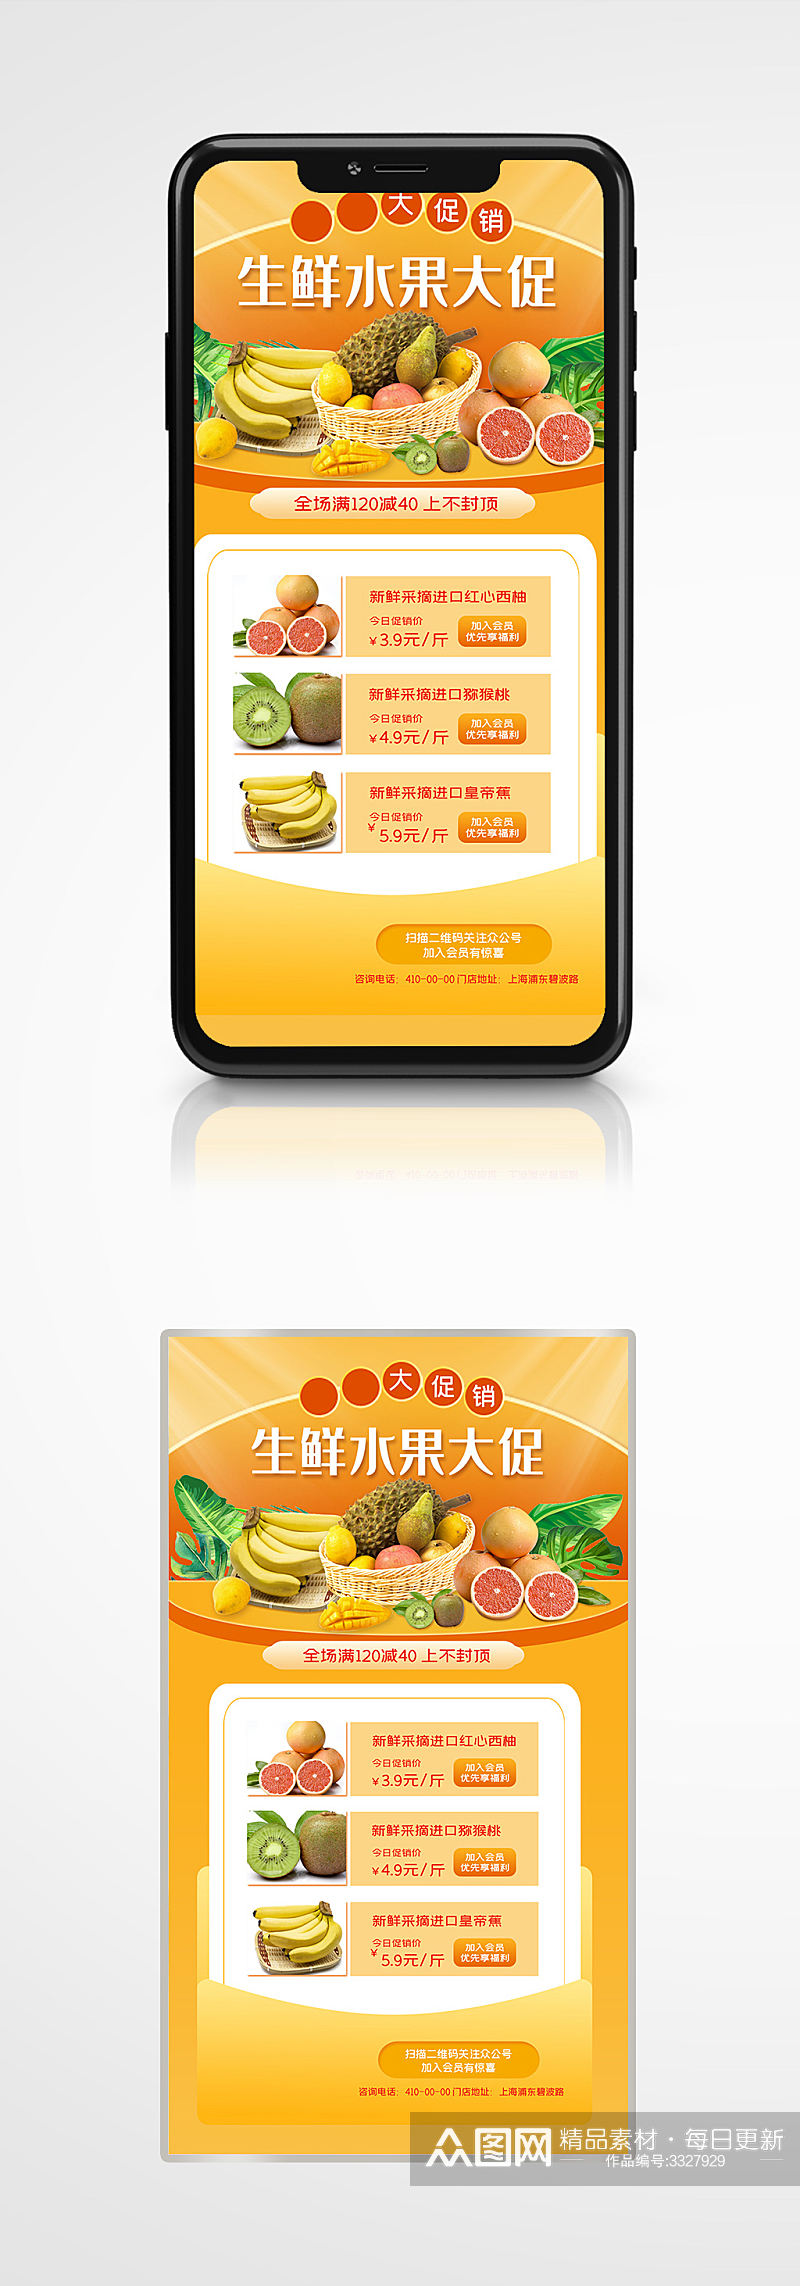 蔬果超市生鲜水果宣传促销手机海报素材